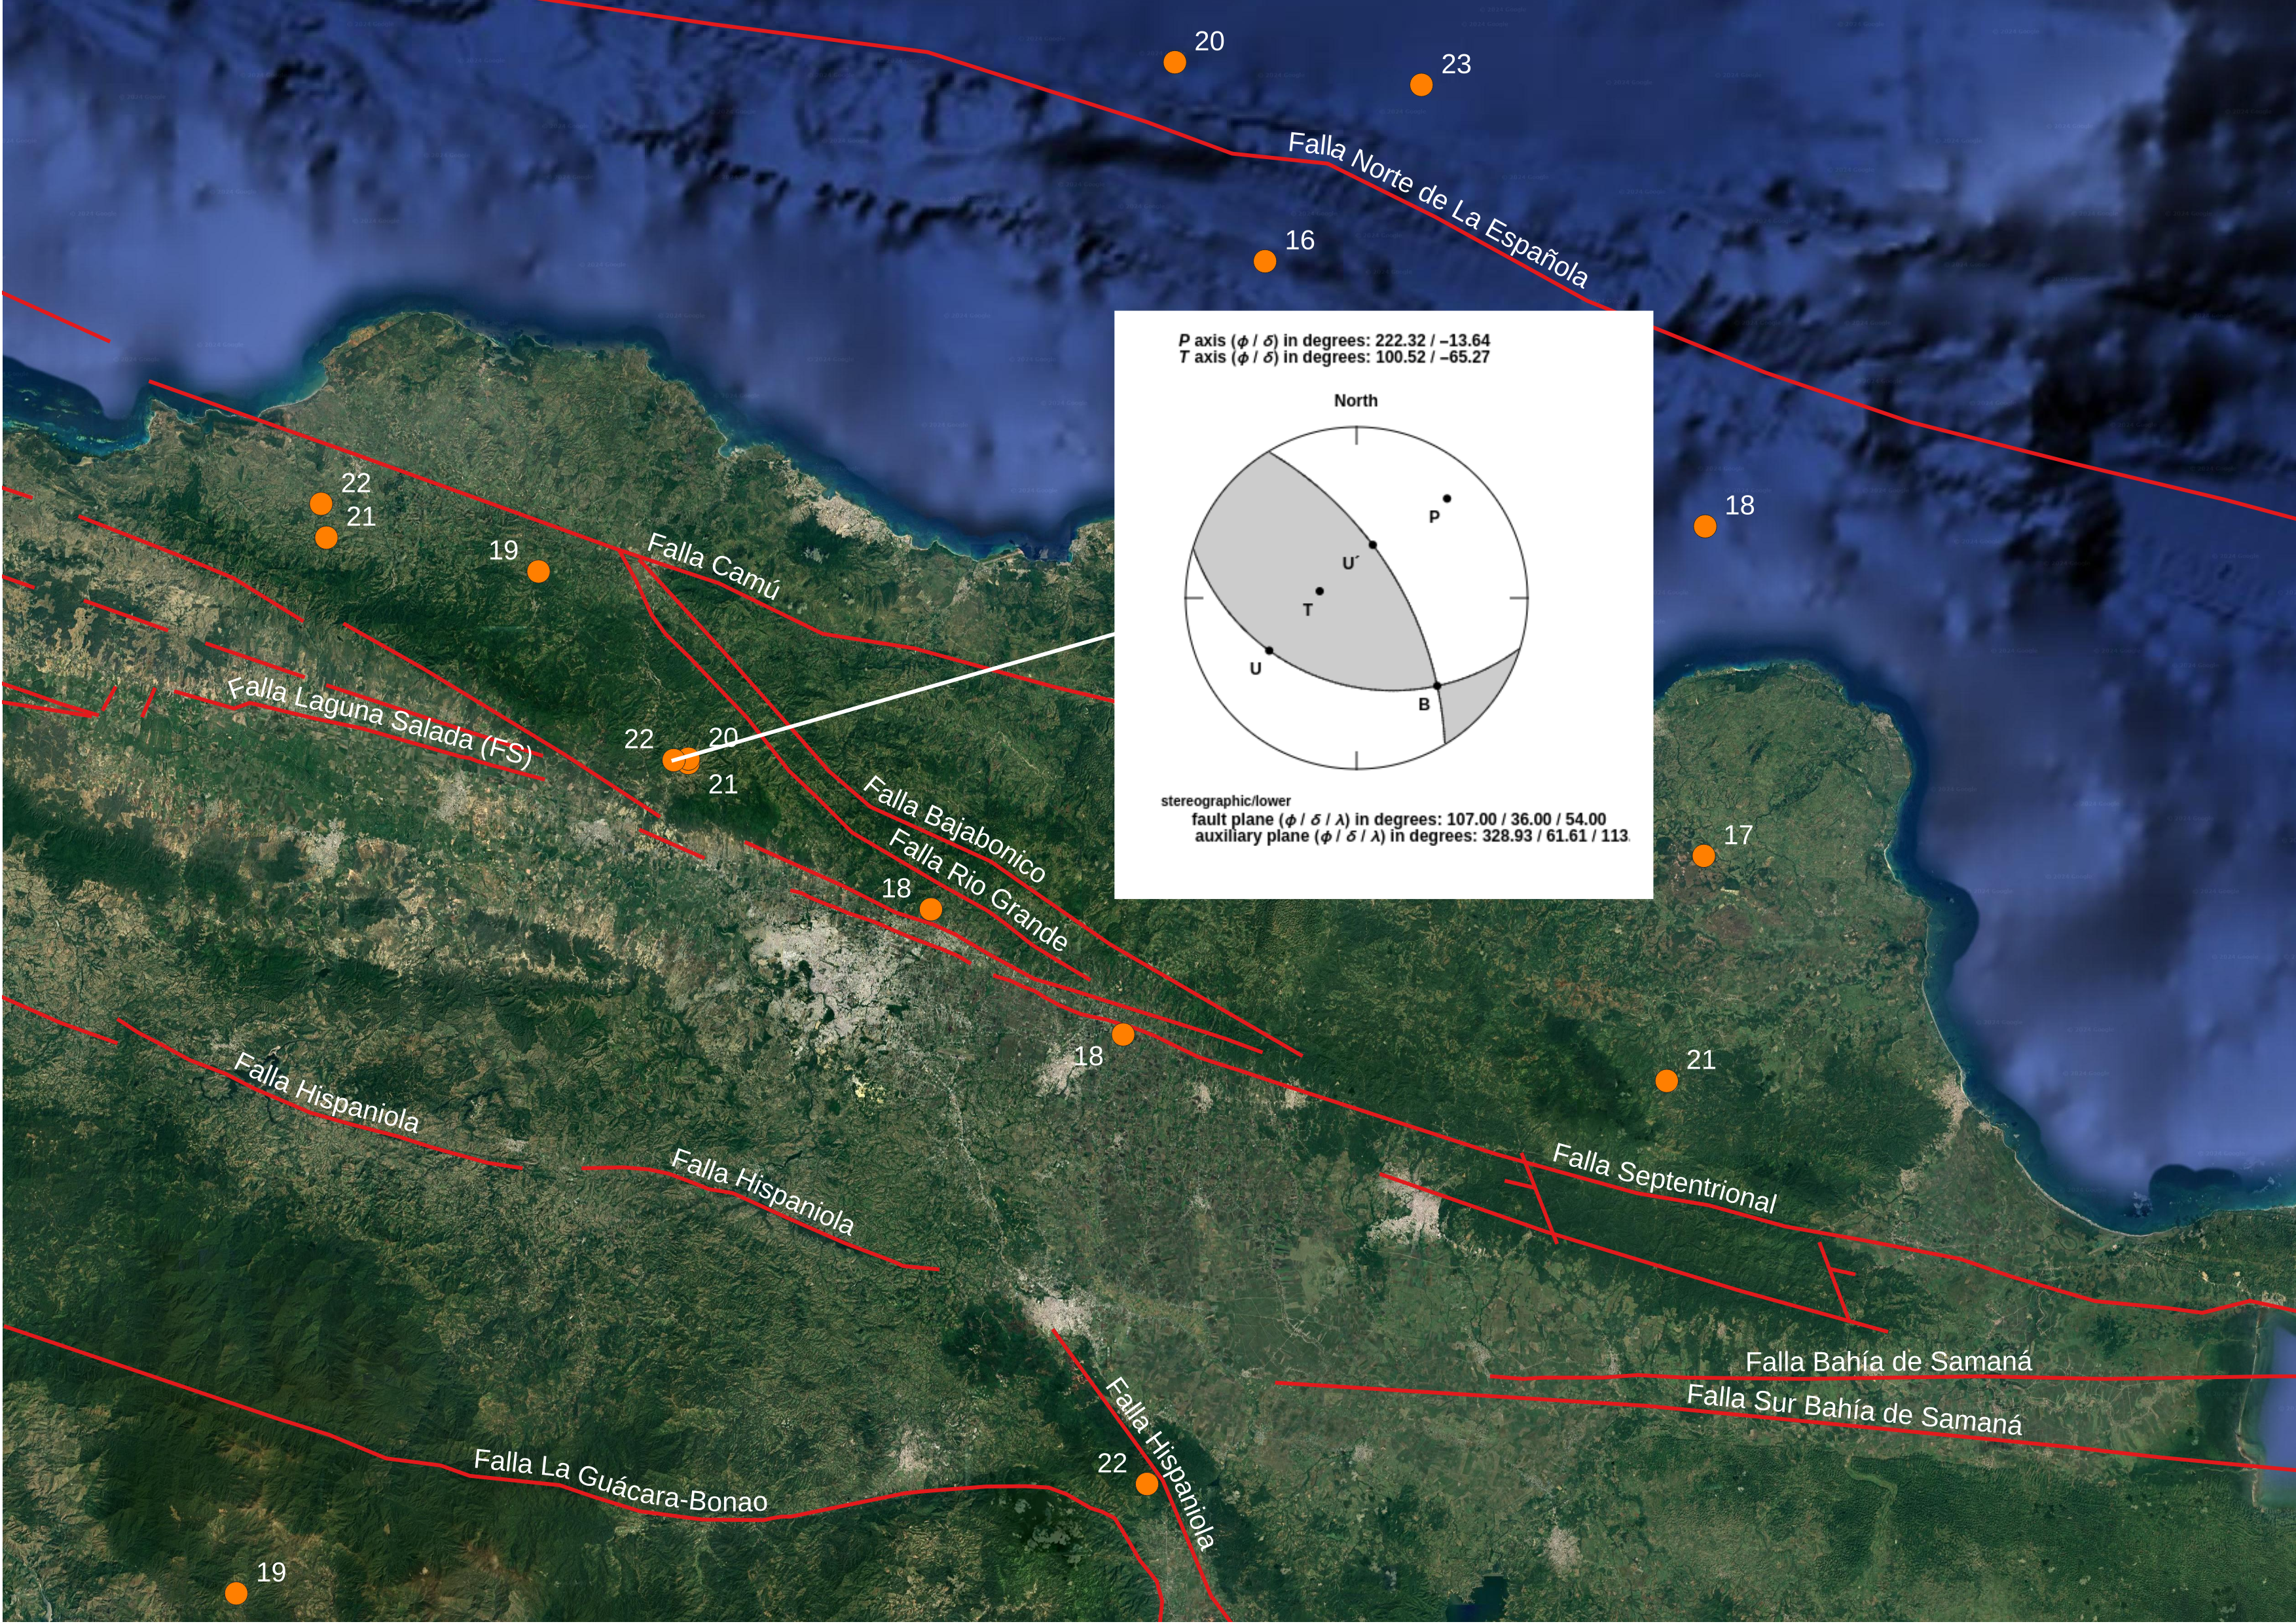 Figura 4, mapa detallando Región norcentral de la República Dominicana mostrando en recuadro el mecanismo focal del temblor de Ml 3.0 al norte de Navarrete. Se indican las profundidades en km. al lado de los epicentros.